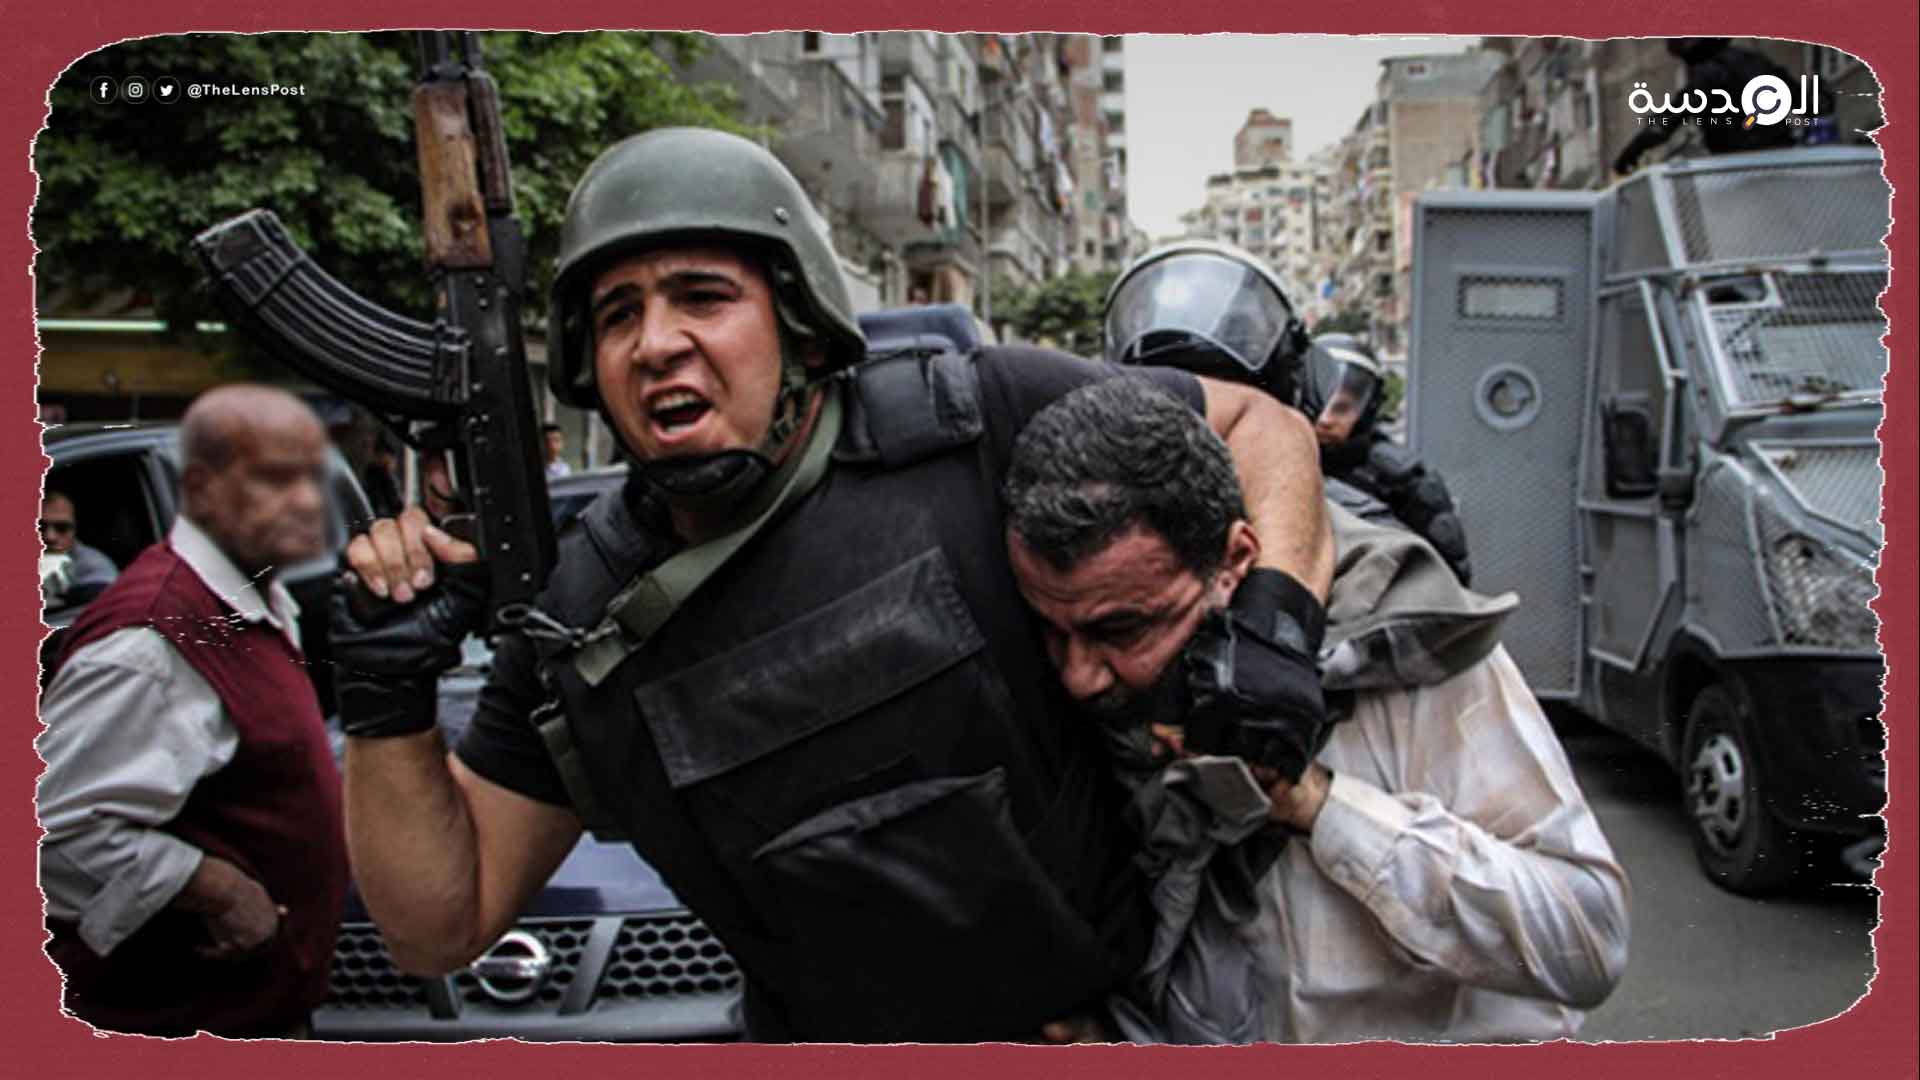 فايننشال تايمز: "كوب 27" يكشف عن حجم الانتهاكات الحقوقية في مصر